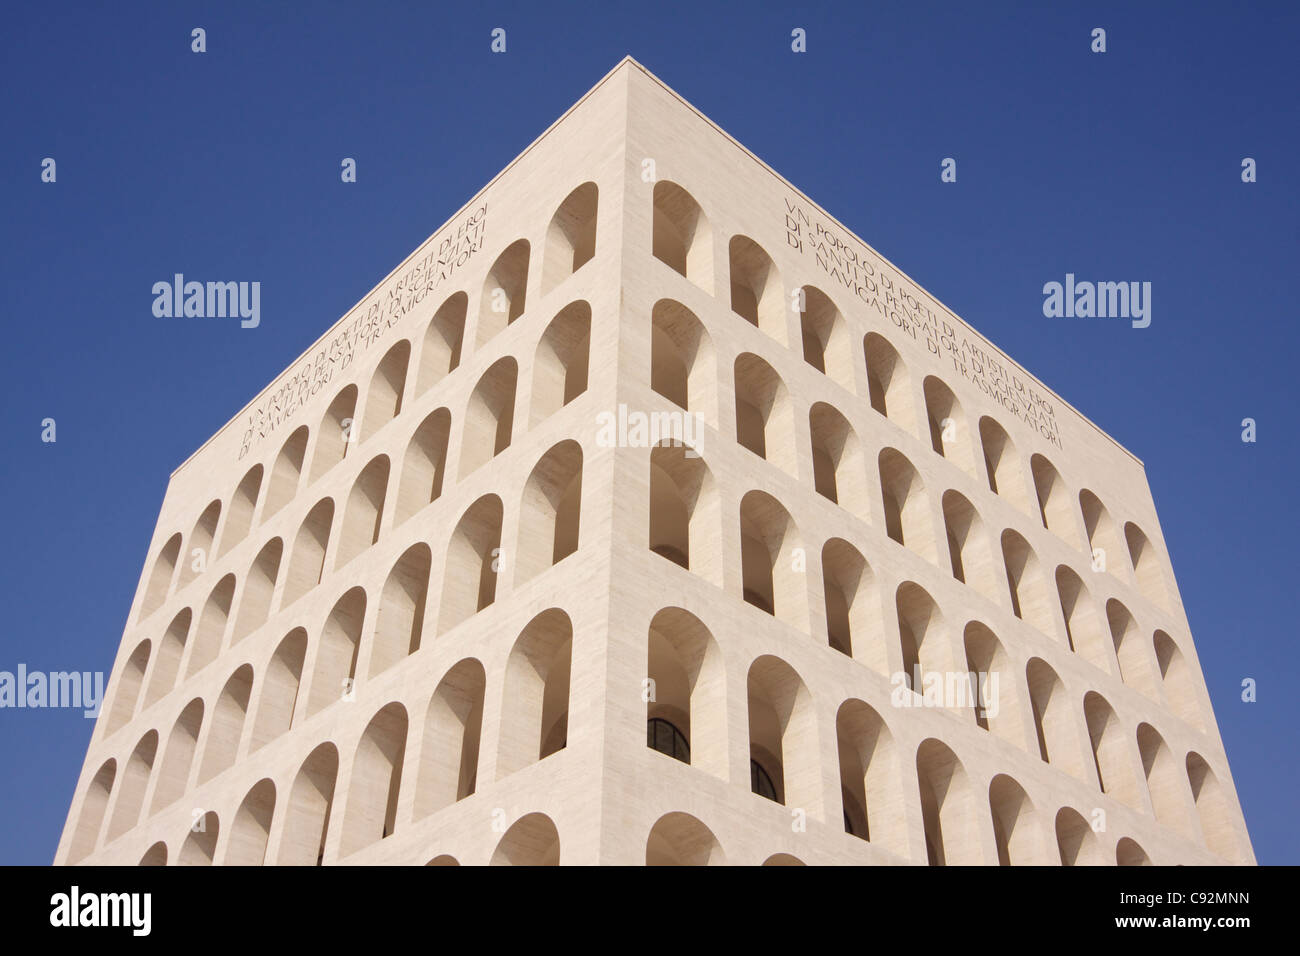 Palazzo della Civilta Italiana oder Colosseo Quadrato Quadrat Colosseum im Stadtteil EUR (Esposizione Universale Roma oder Stockfoto